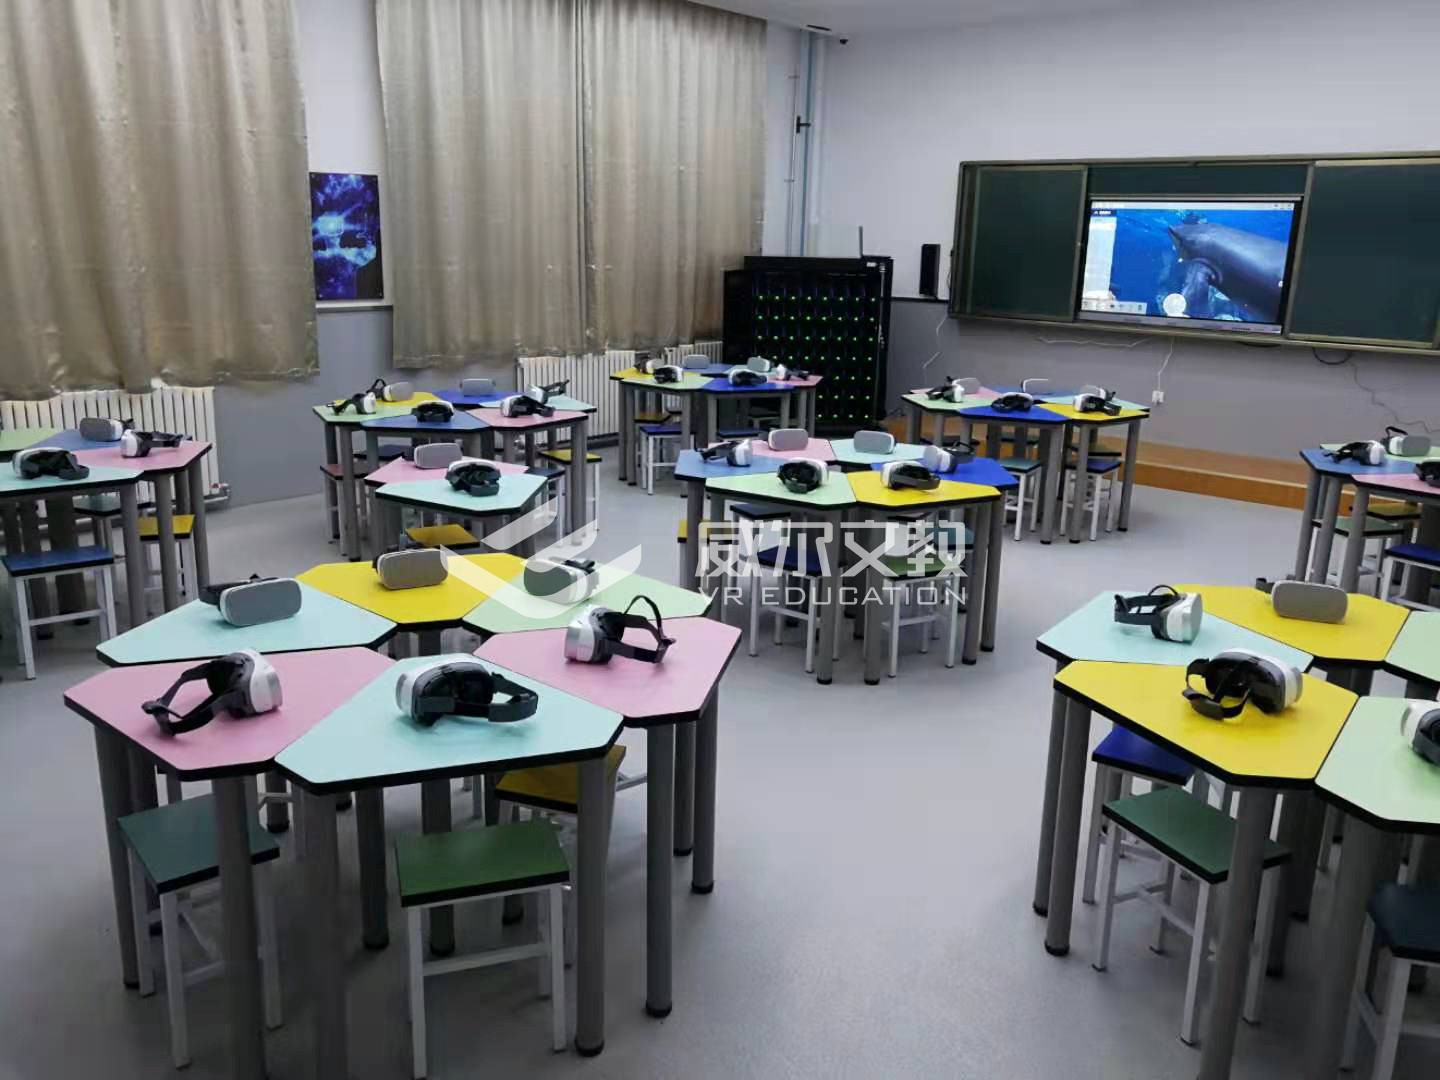 威尔文教为延安新区某小学打造VR超感教室